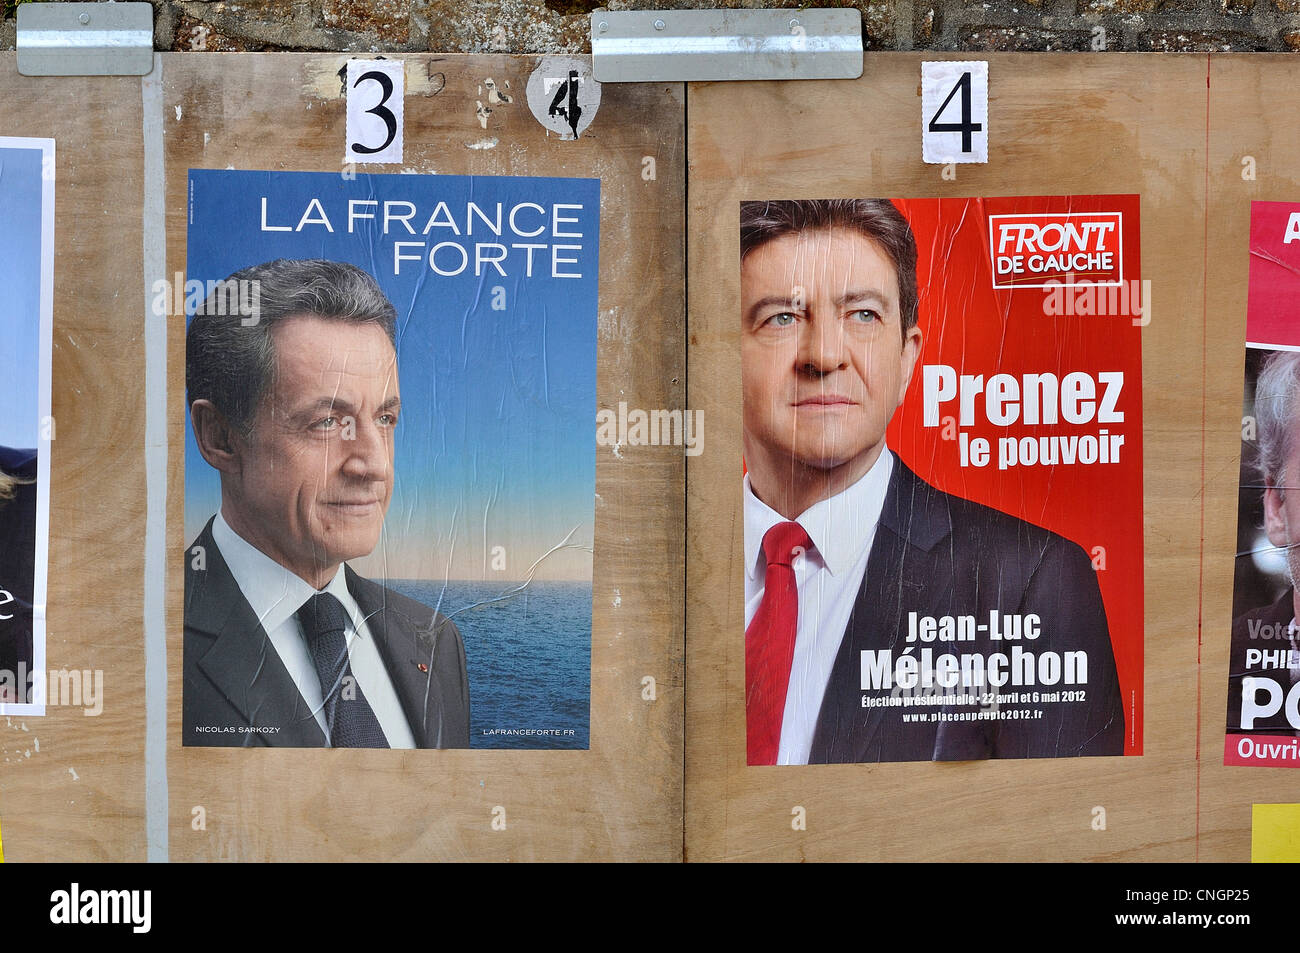 L'élection du Président de la République en France, les affiches des candidats pour le premier tour. Banque D'Images